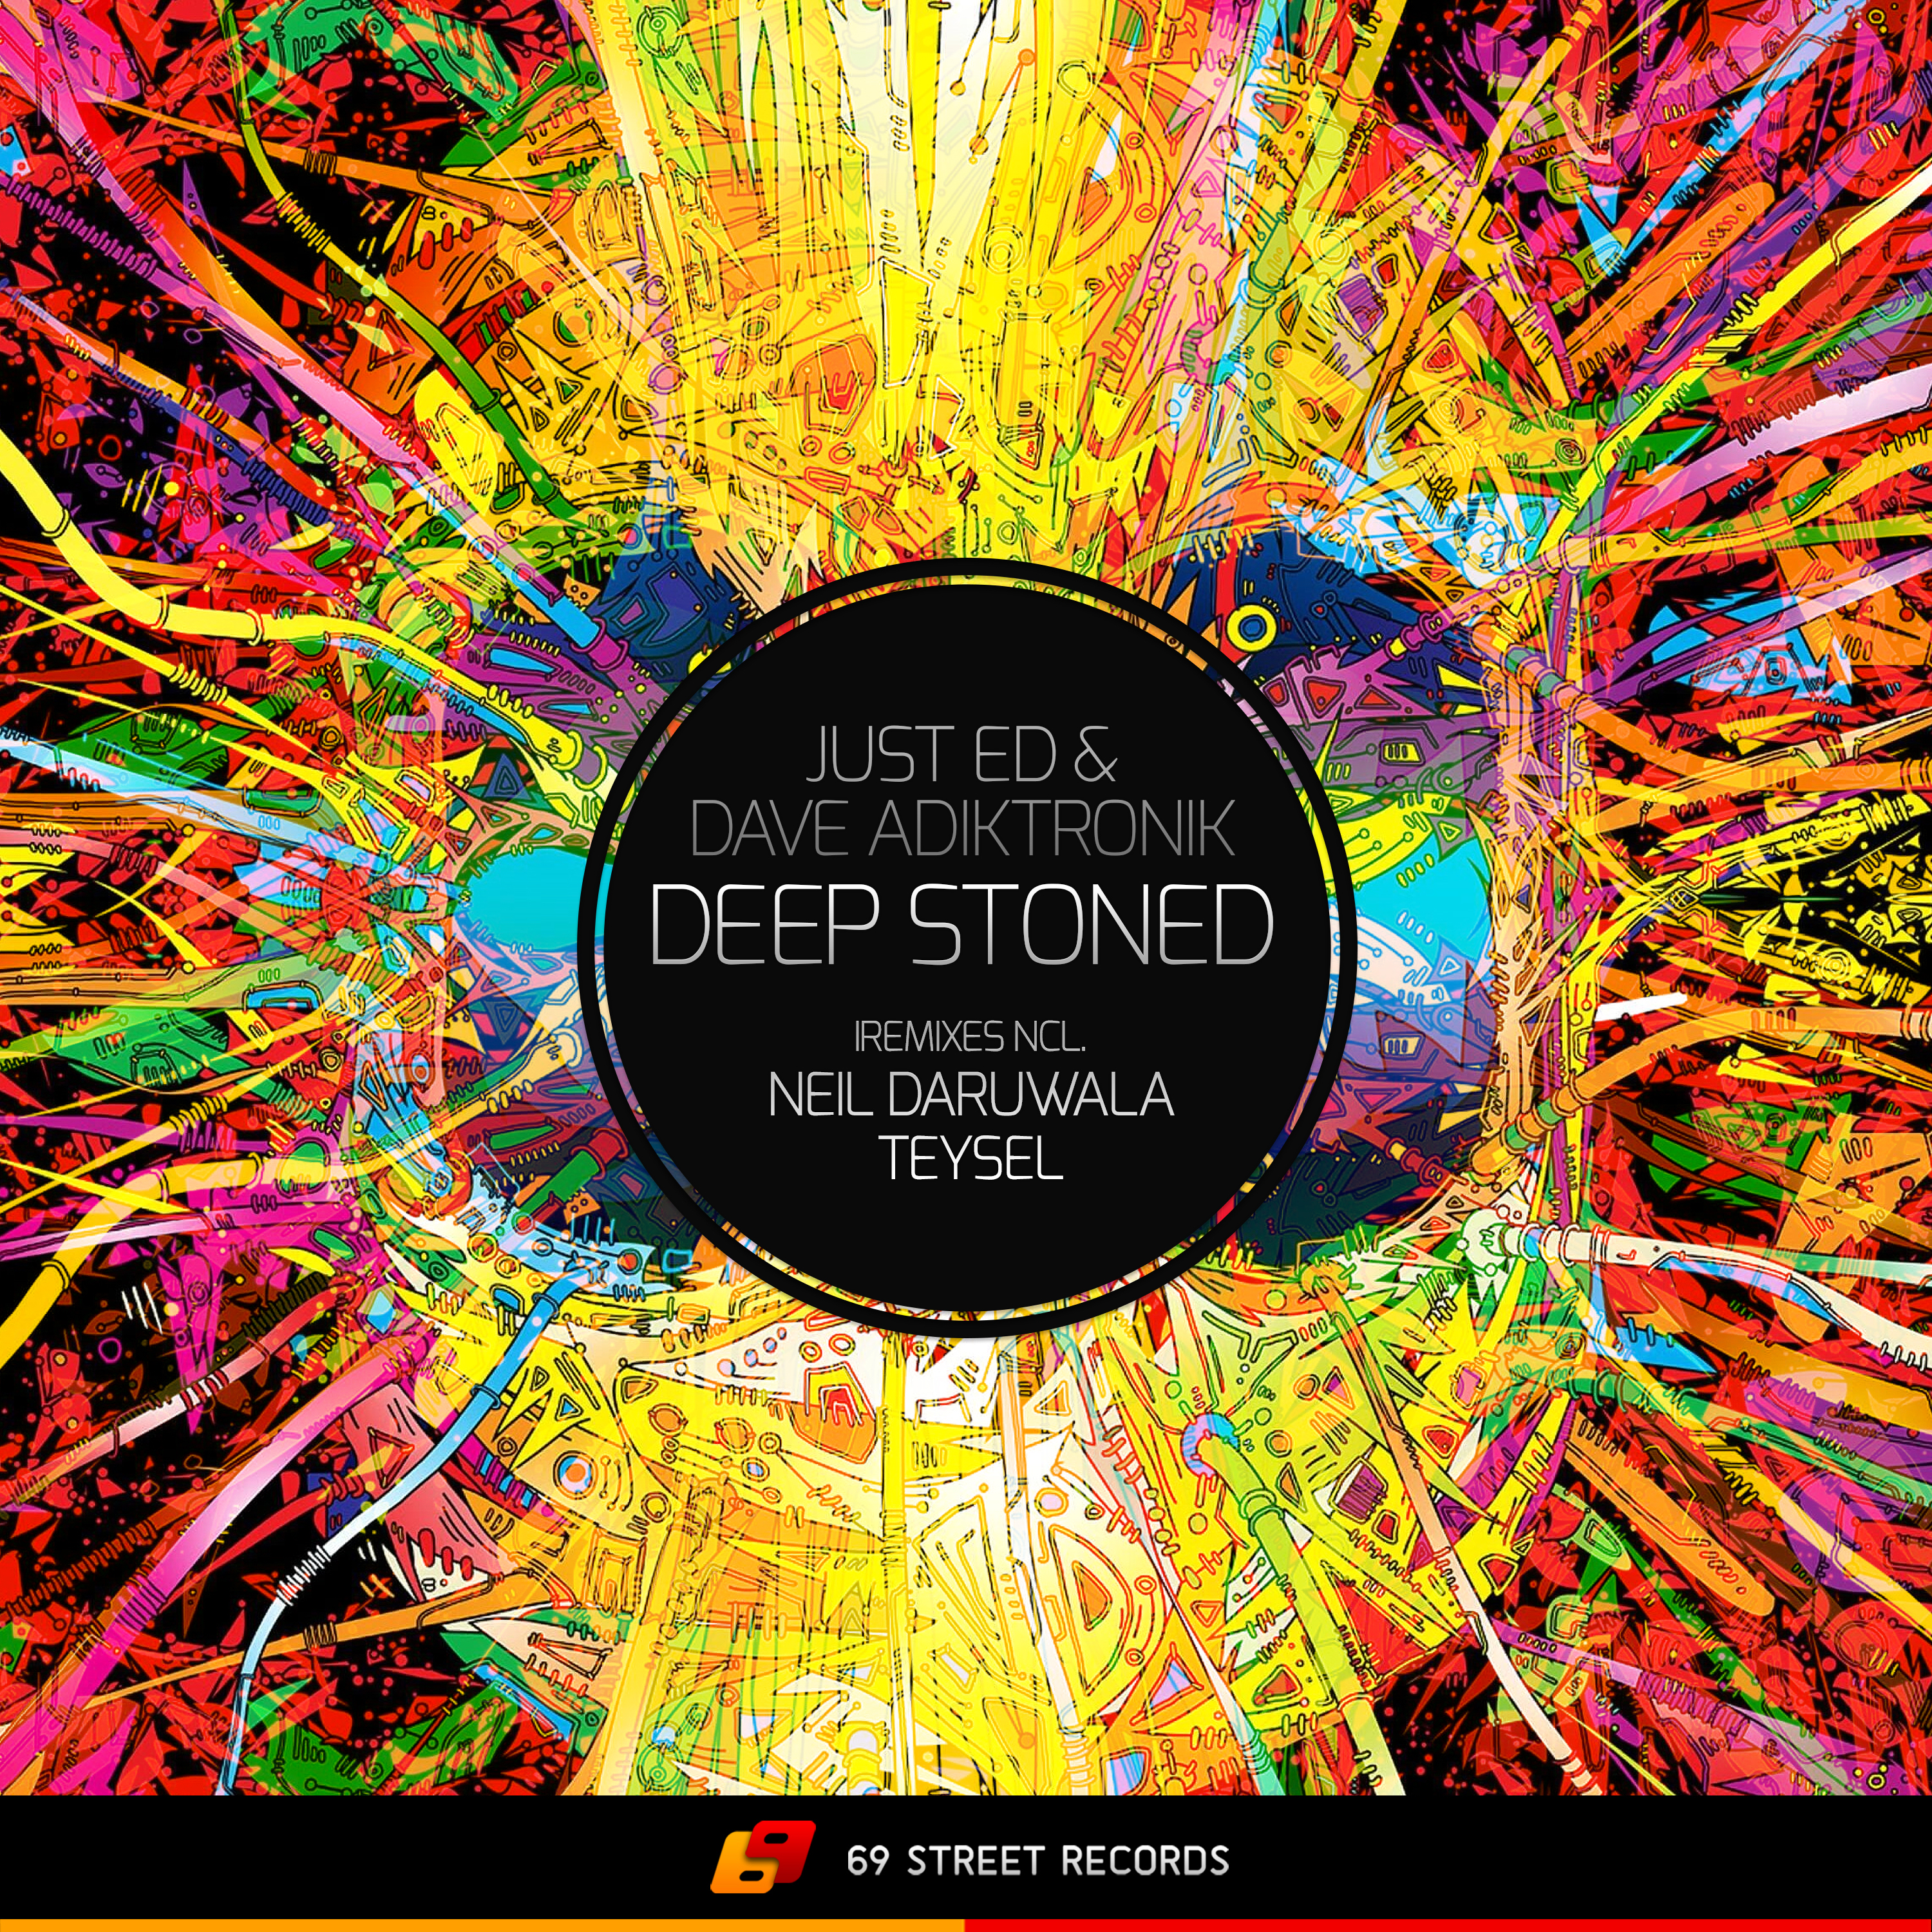 Deep Stoned (Neil Daruwala Remix)